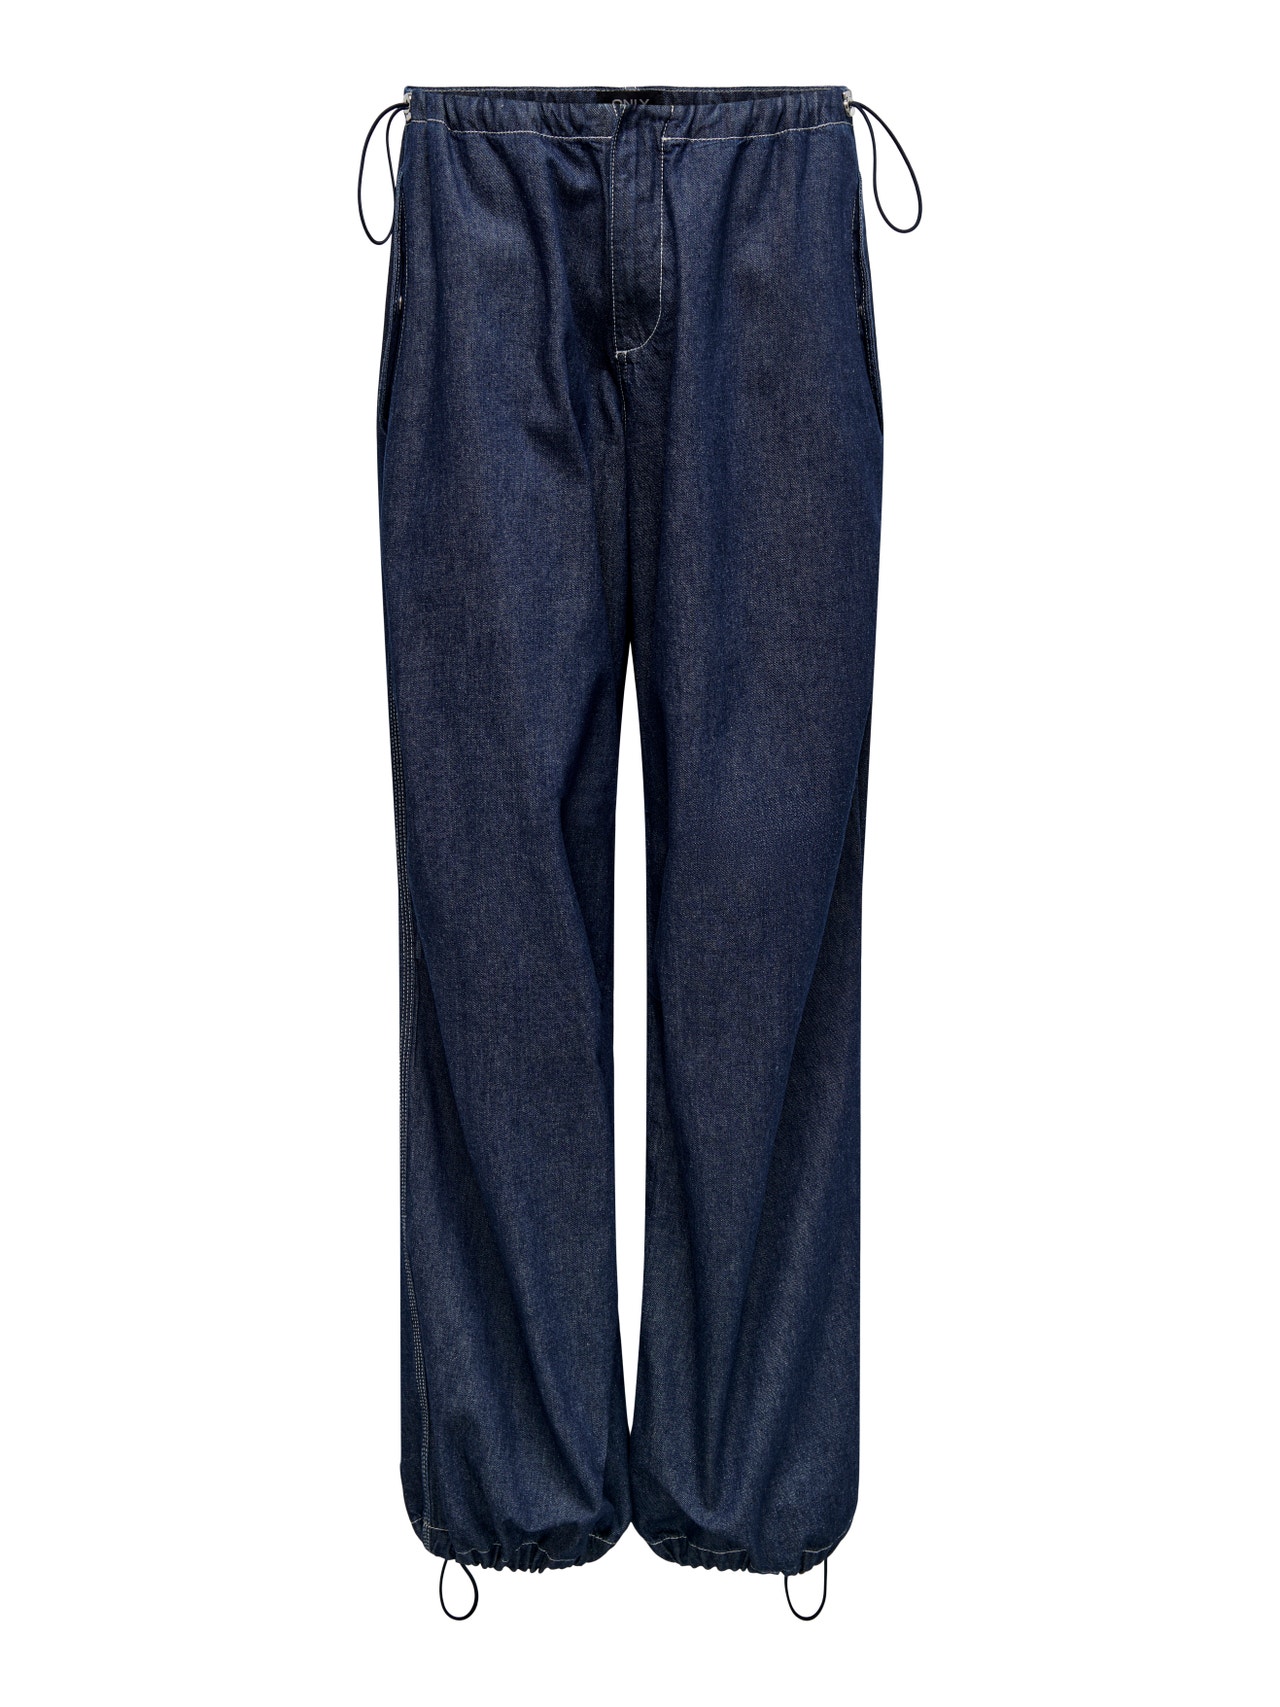 ONLY Jeans Baggy Fit Taille classique Cordon de réglage -Dark Blue Denim - 15304285